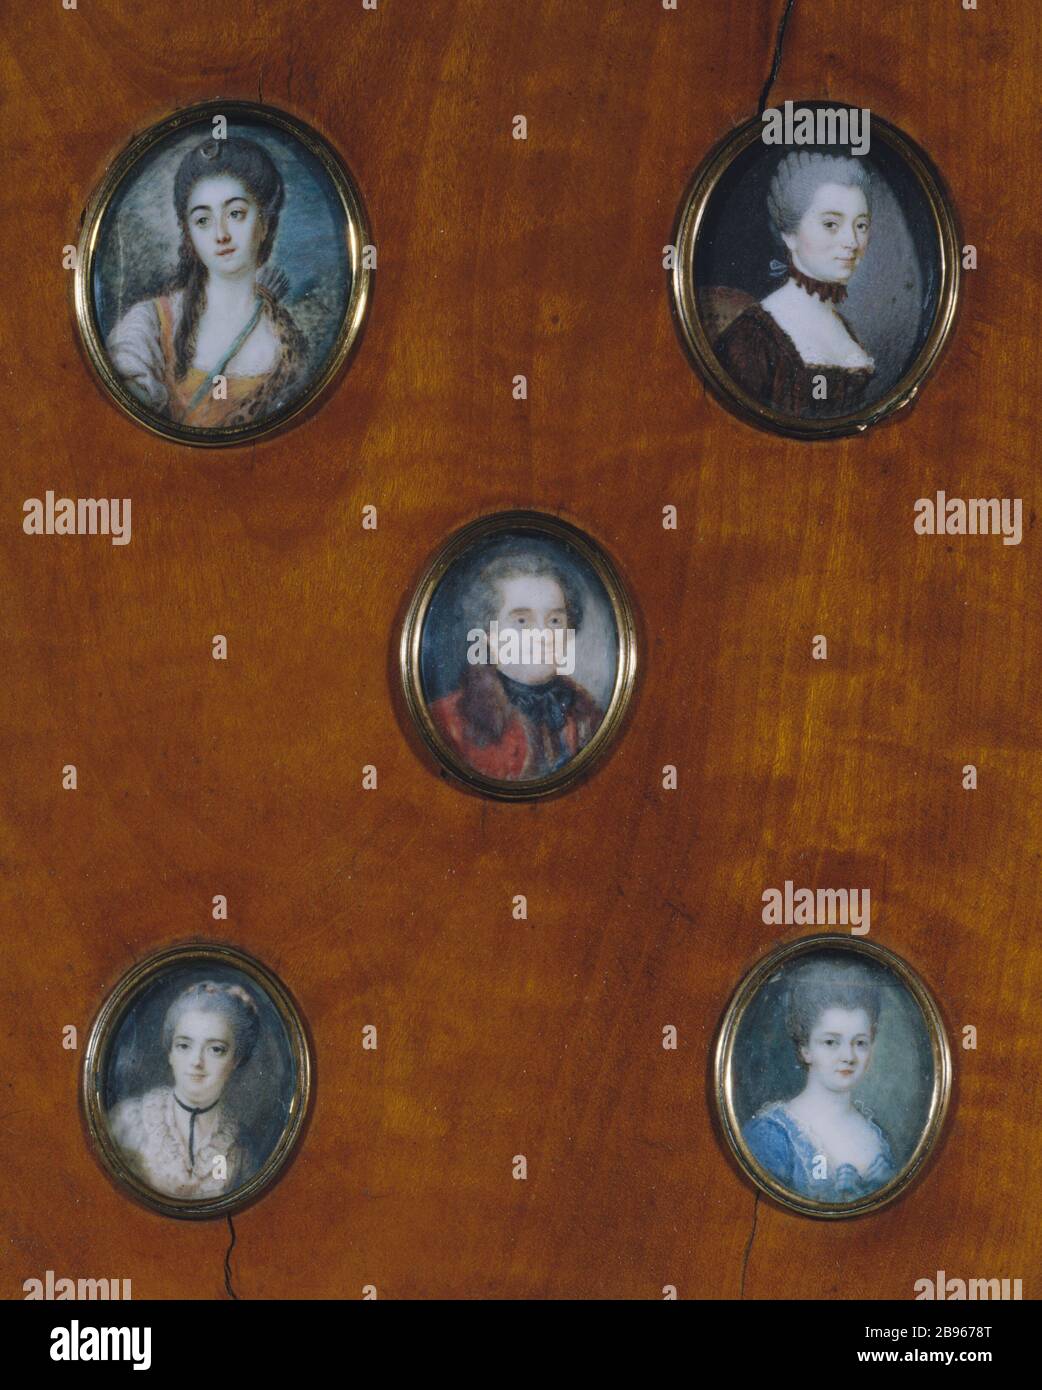 MINIATUREN Miniaturen. De haut en bas et de gauche à droite : Aurore de Saxe, Madame d'Epinay, Maréchal de Saxe, Geneviève de Verrières et Marie de Verrières. Paris, Musée de la Vie Romantique. Stockfoto